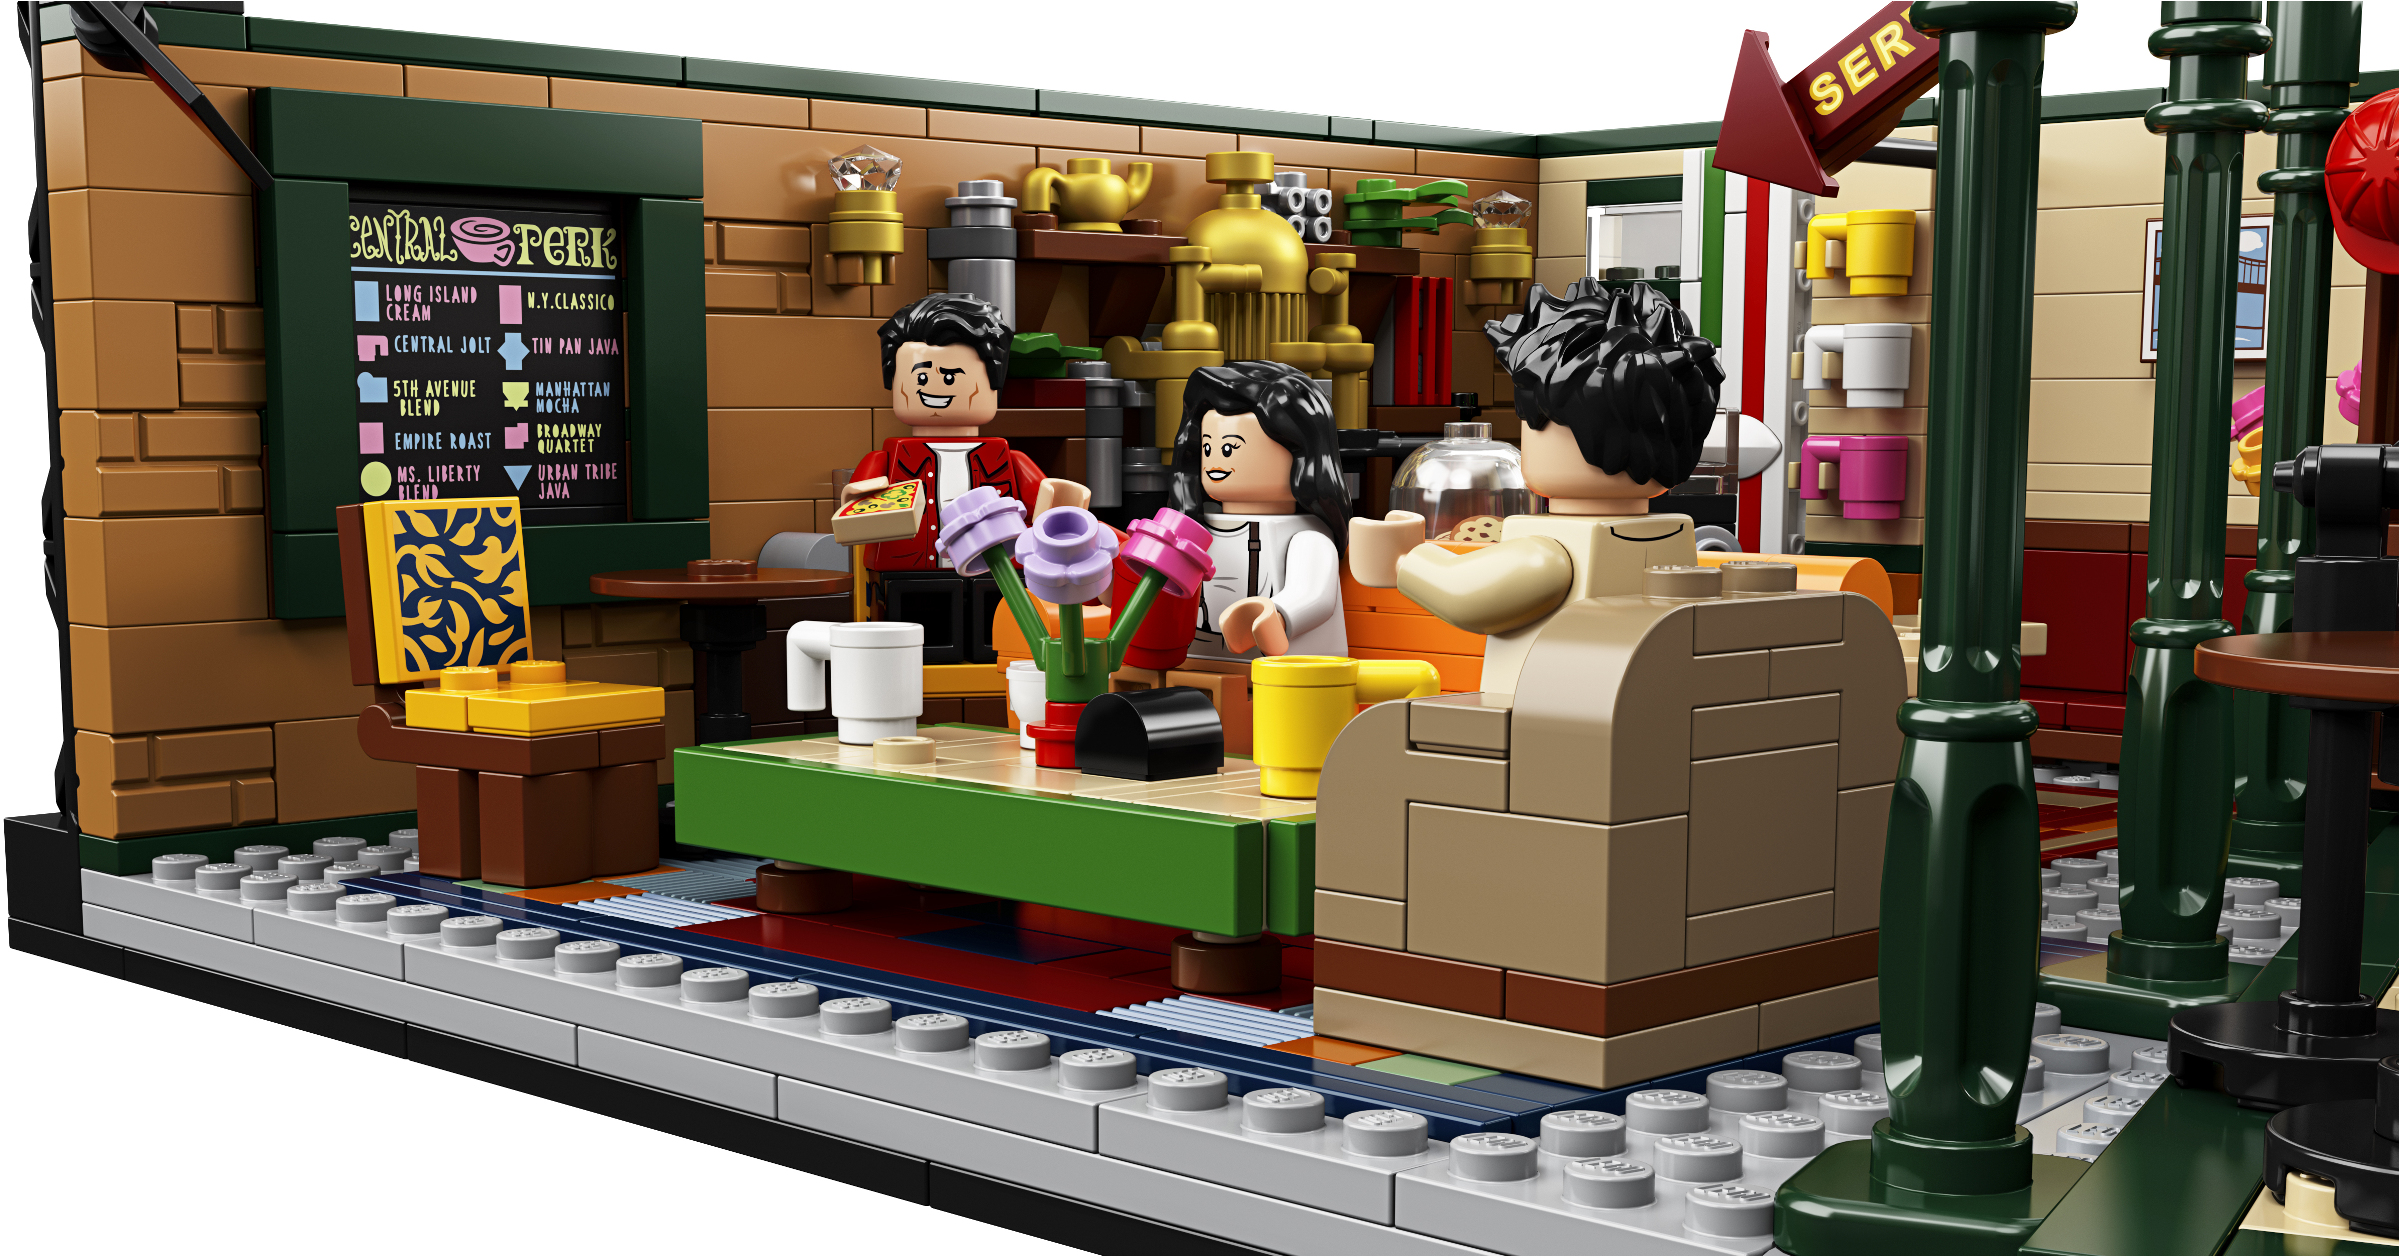 Lego Idées Friends Central Perk Joey Tribbiani figurine 21319 BRAND NEW 